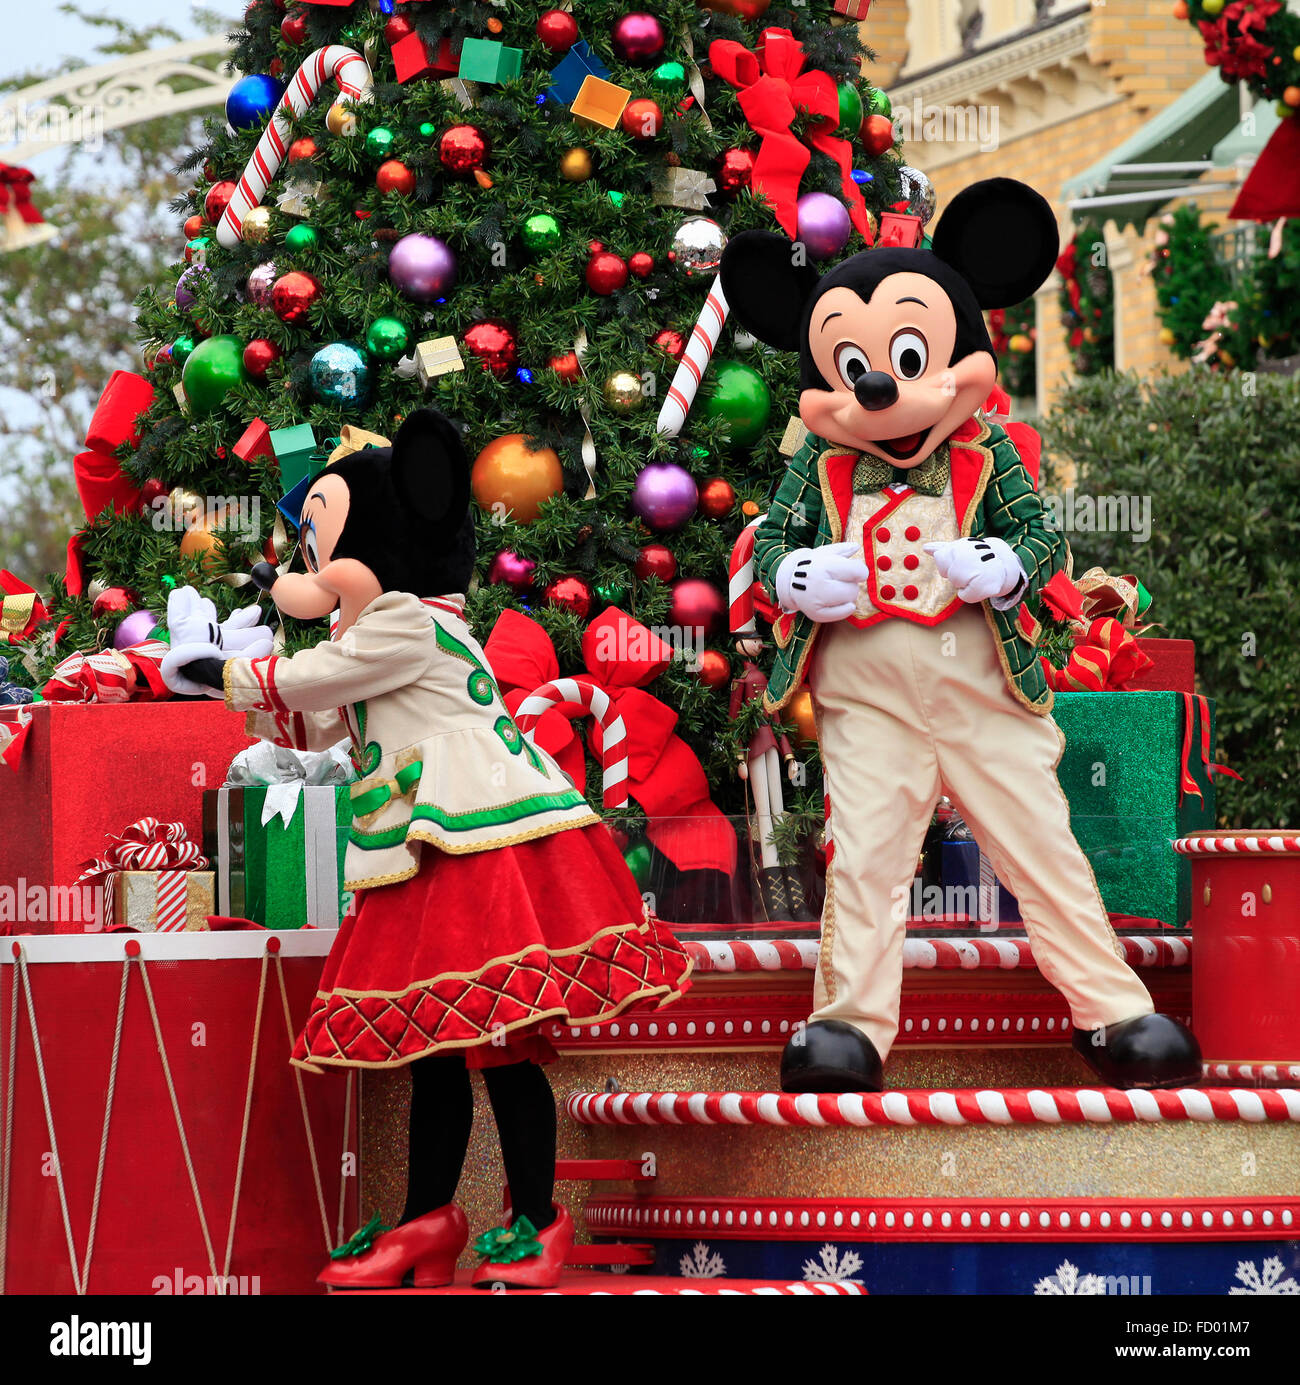 Maison de Mickey et Minnie Mouse sur Parade de Noël dans la région de Magic Kingdom, Orlando, Floride Banque D'Images